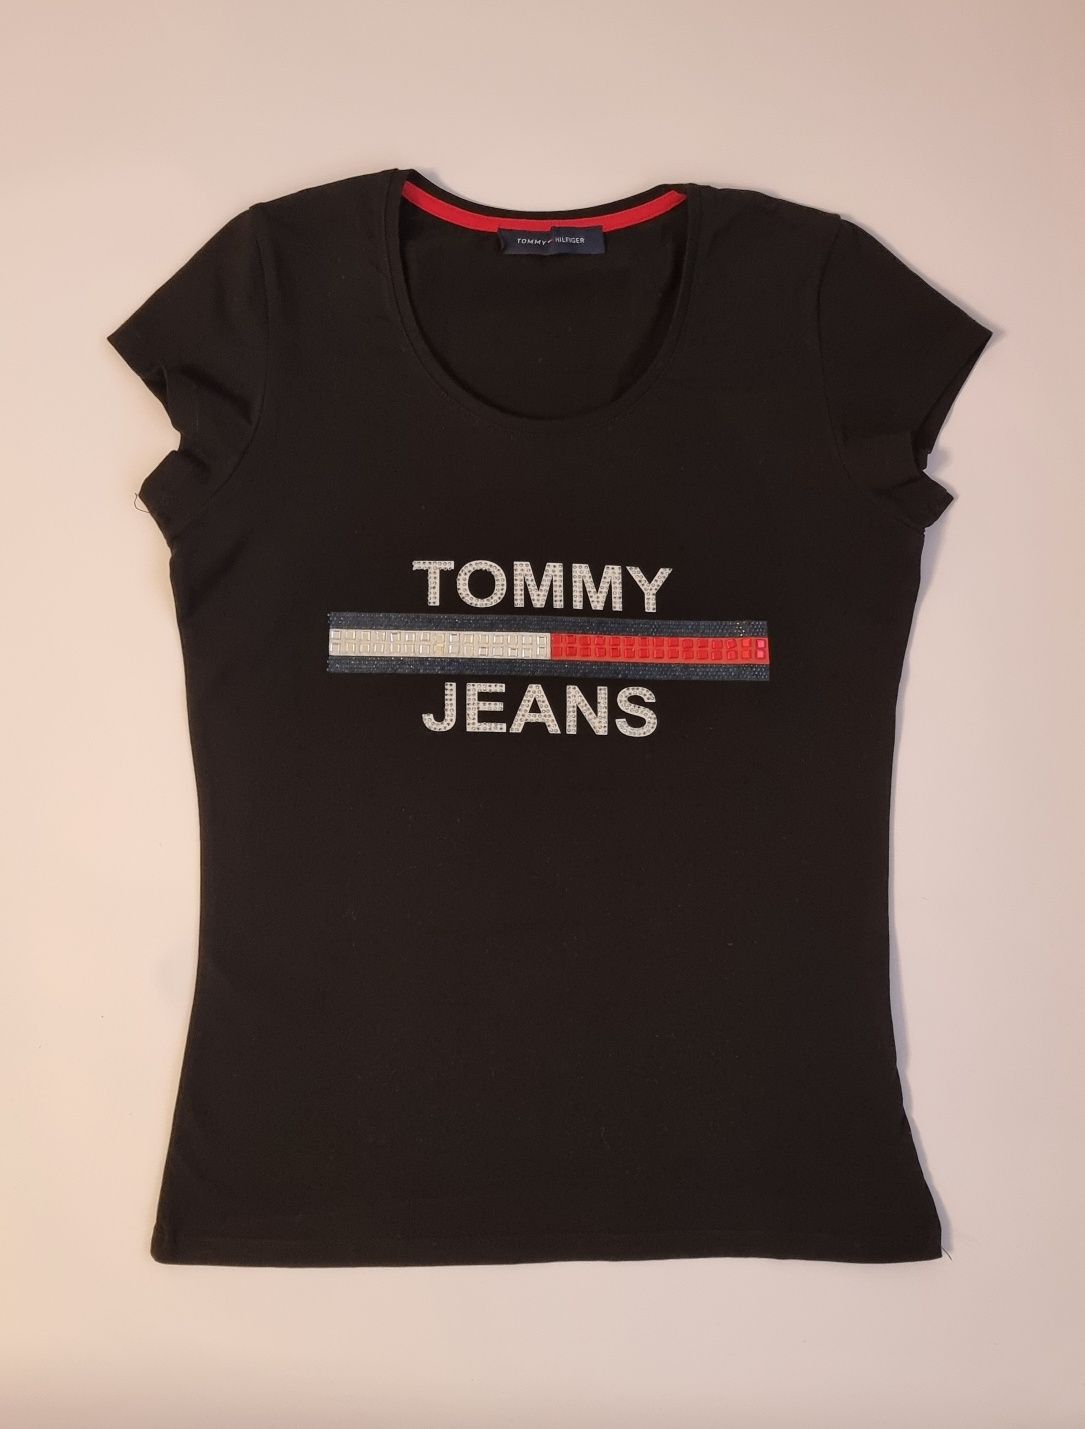 T-shirt podkoszulek czarny ze świecącym nadrukiem damski rozmiar S/M